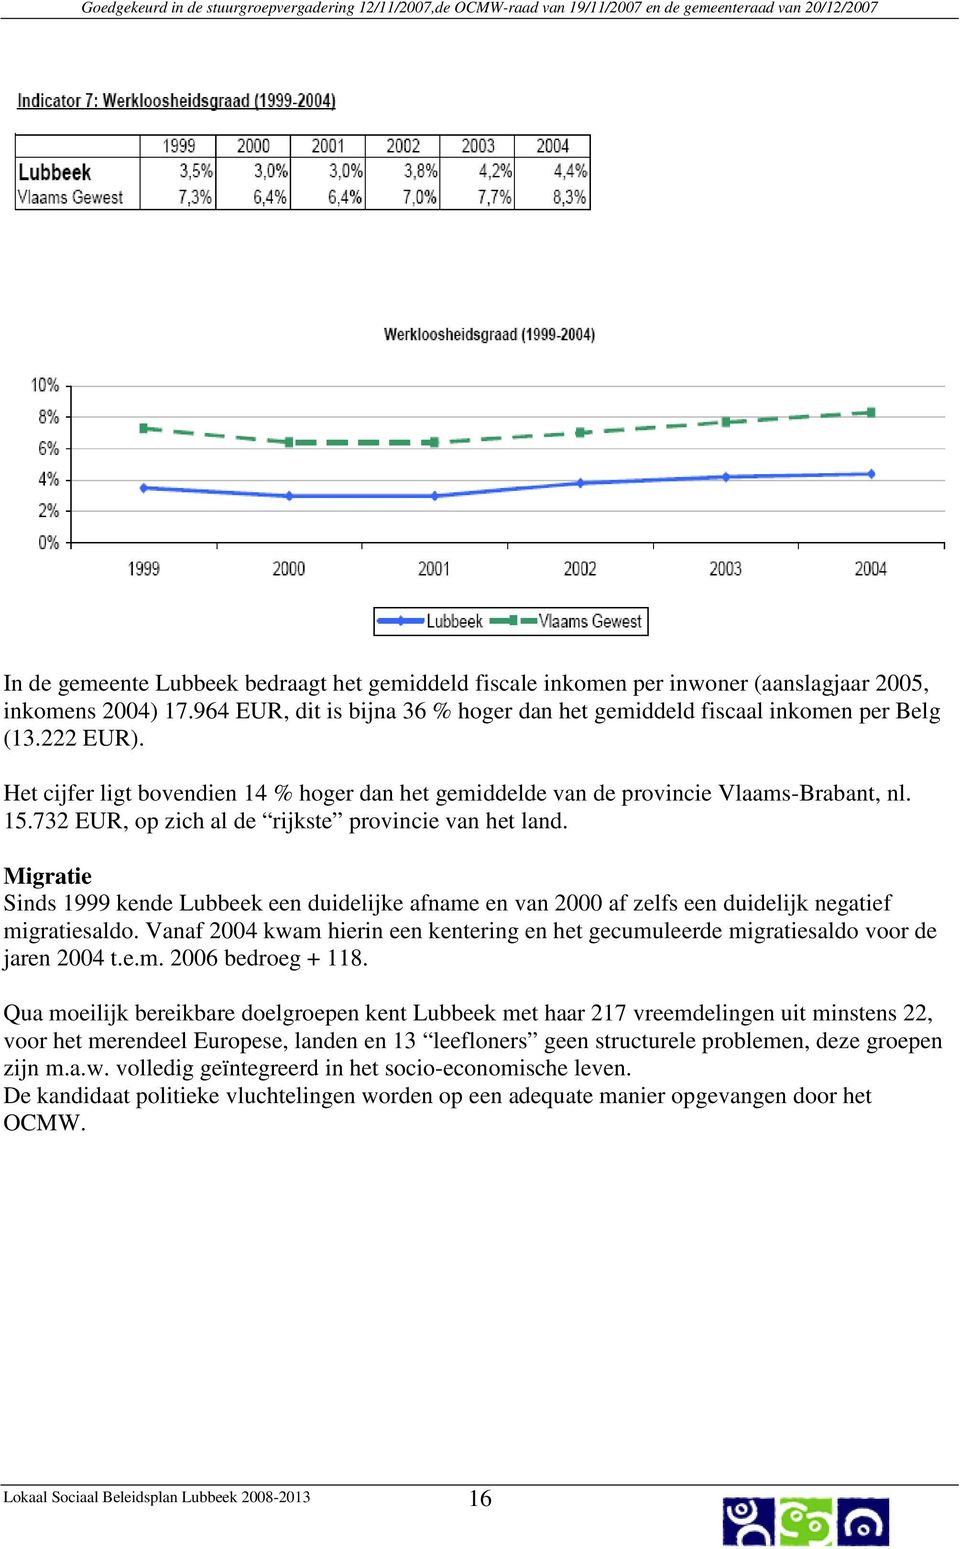 Migratie Sinds 1999 kende Lubbeek een duidelijke afname en van 2000 af zelfs een duidelijk negatief migratiesaldo.